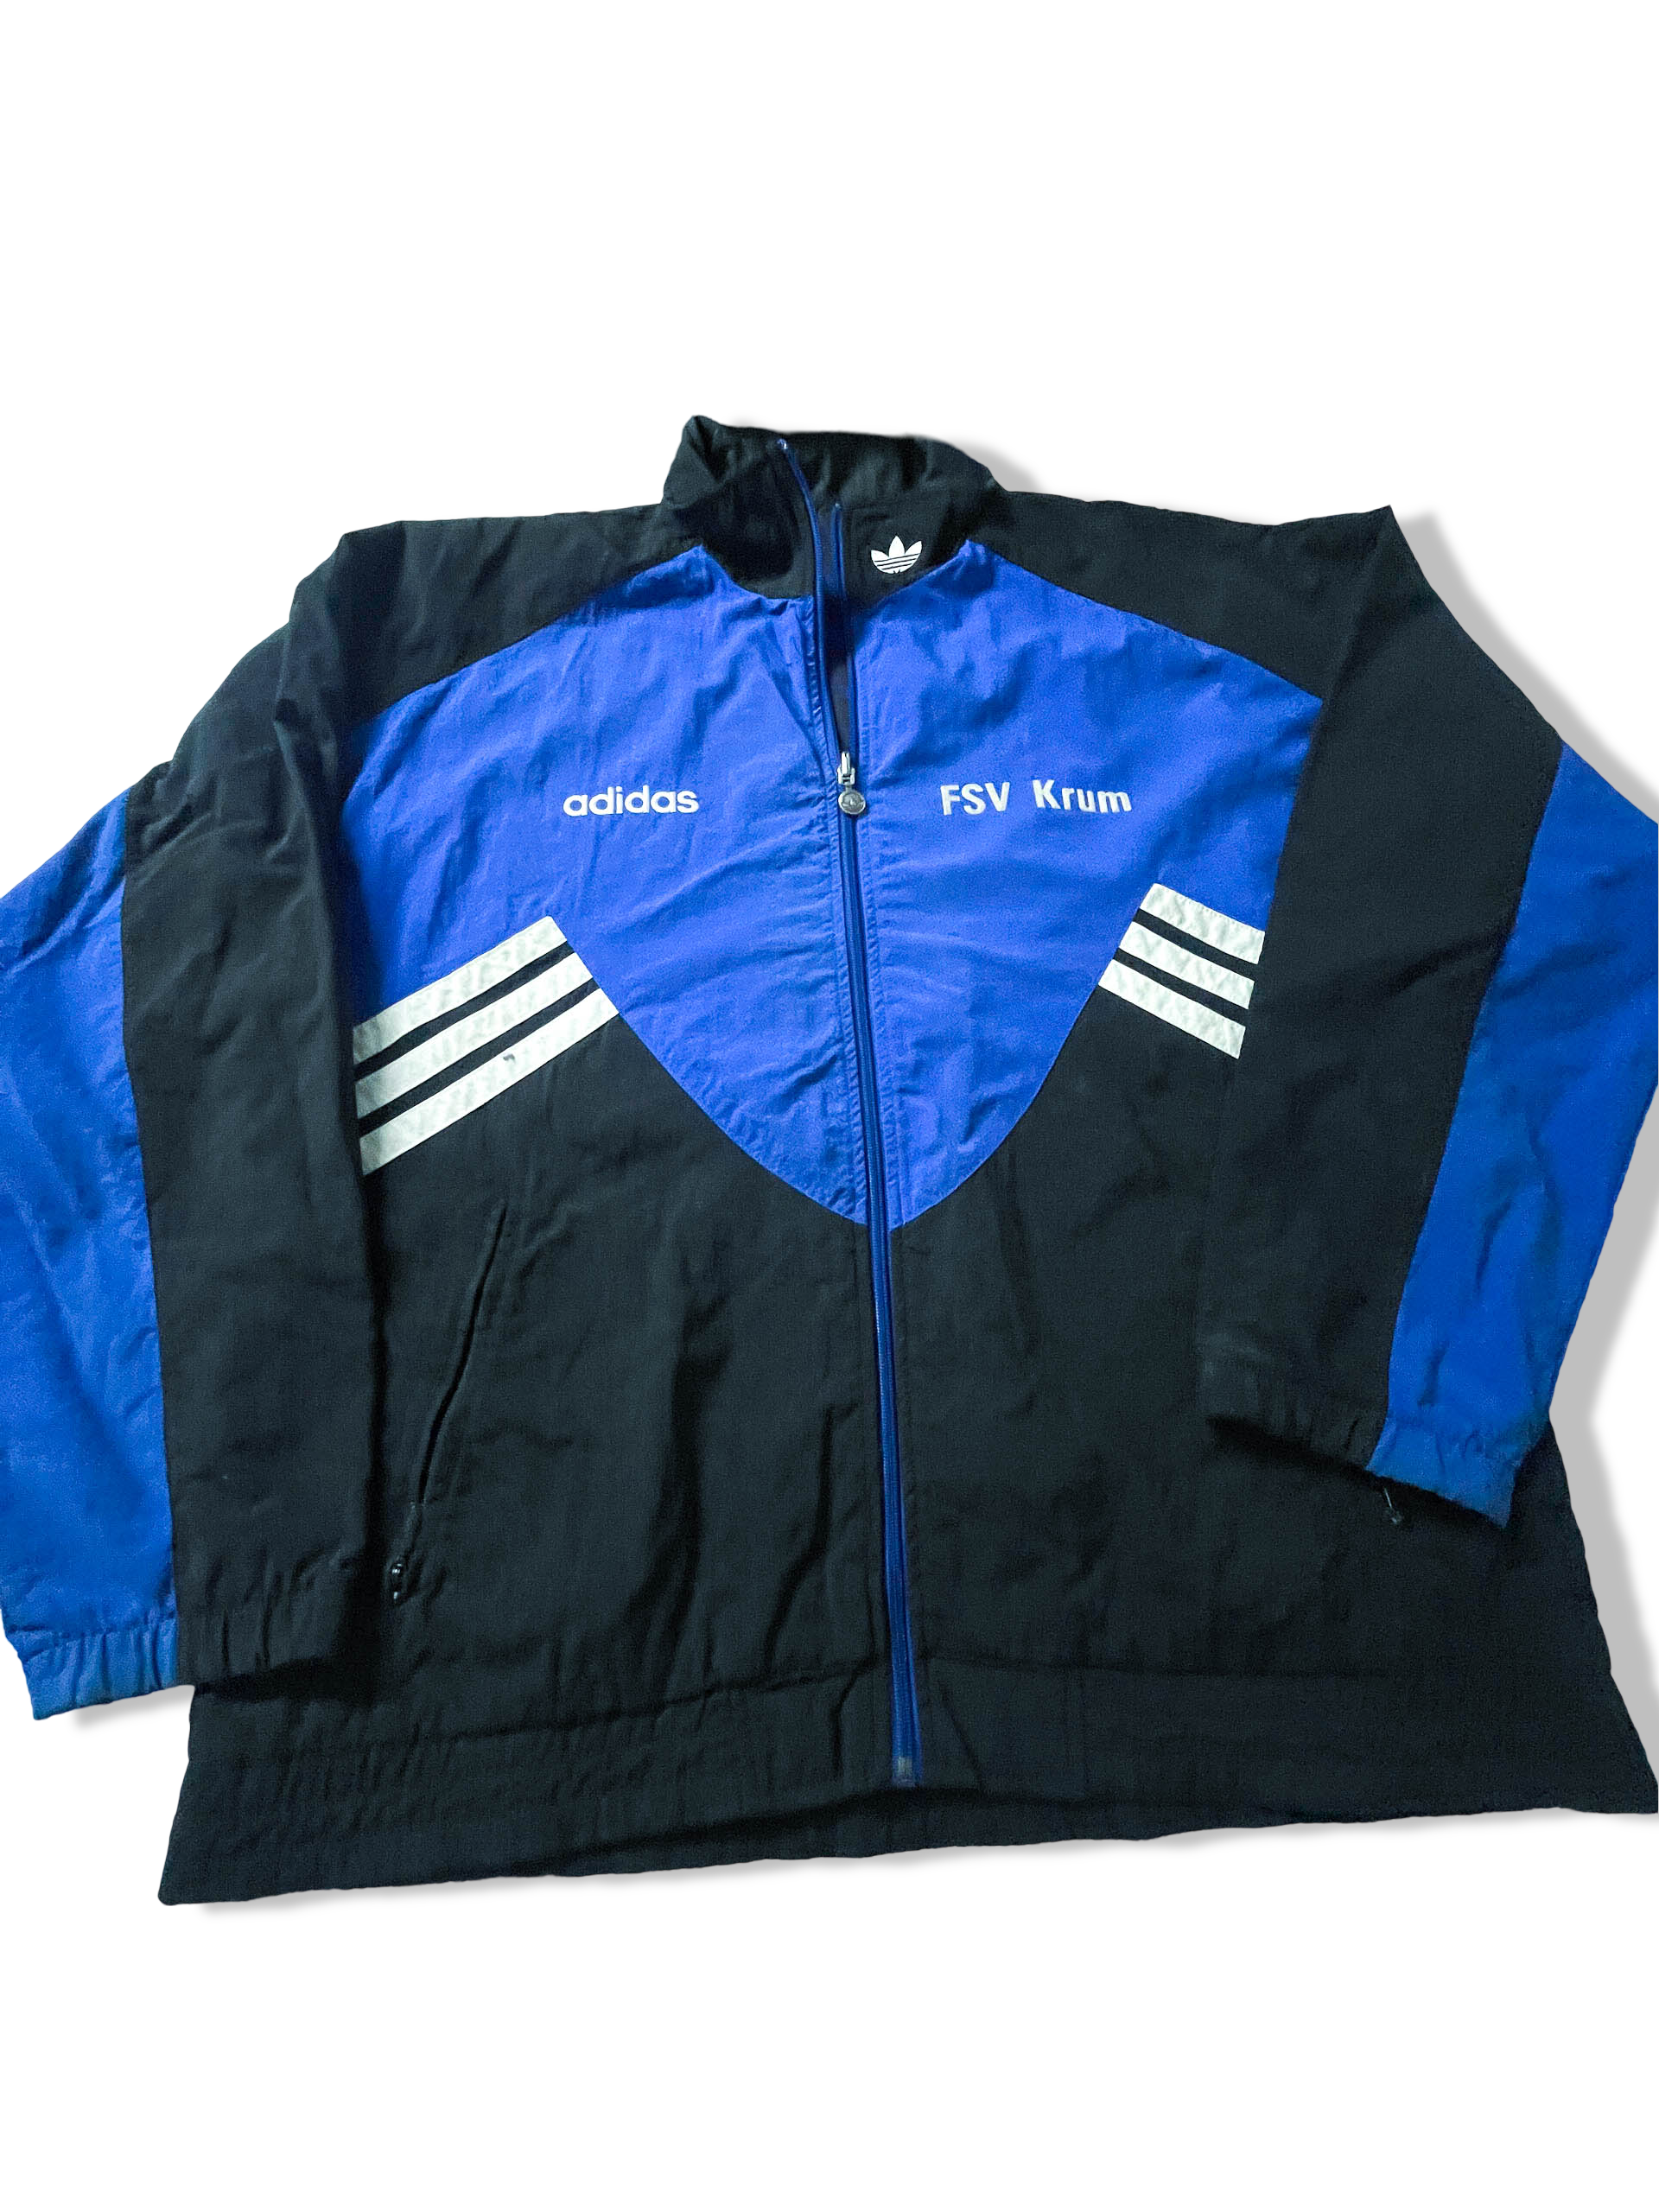 Vintage Men's Adidas FSV Krum Blue colorblock full zip track top in L/XL |L32 W25|SKU 3886